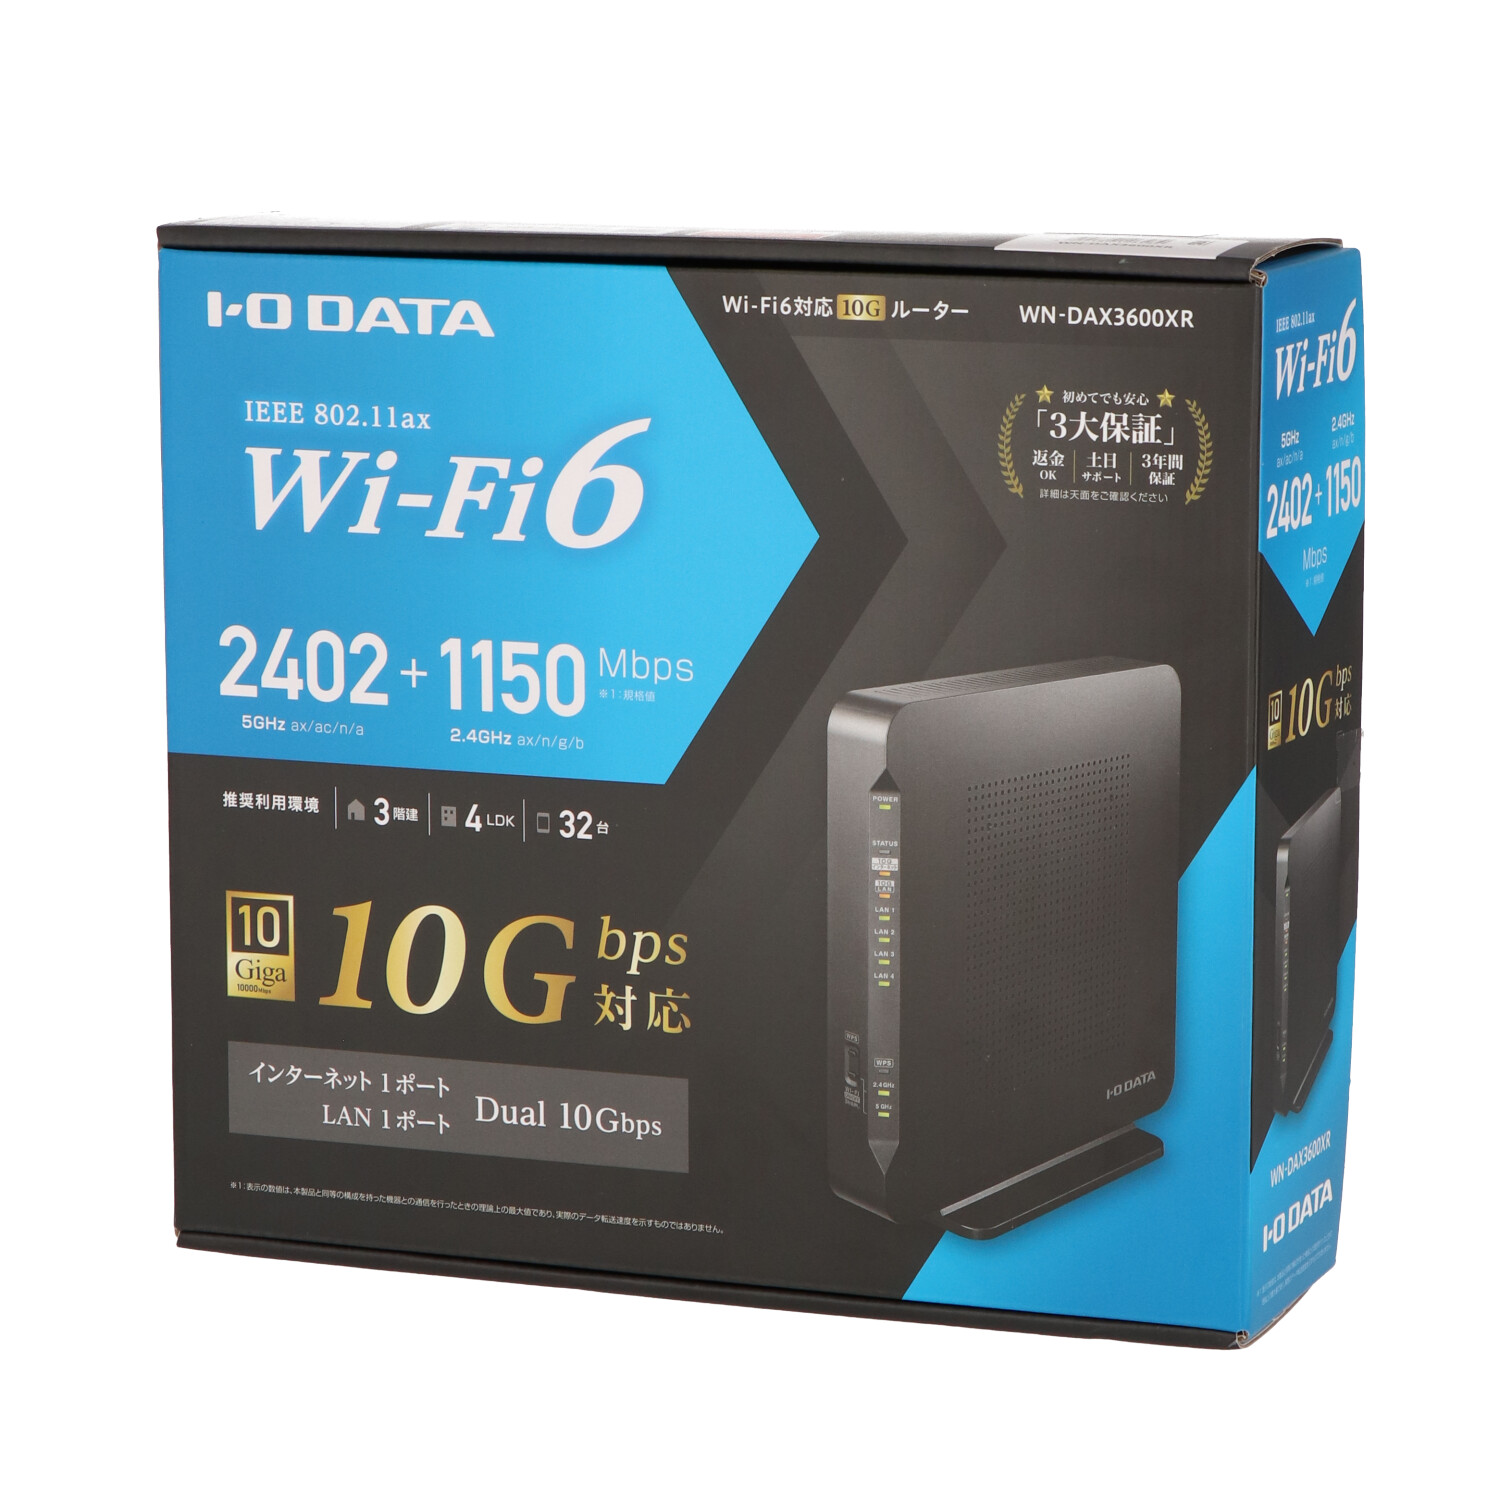 I-O DATA WN-DAX3600XR Wi-Fi 6対応 10G ルーター Y6101557 - 周辺機器